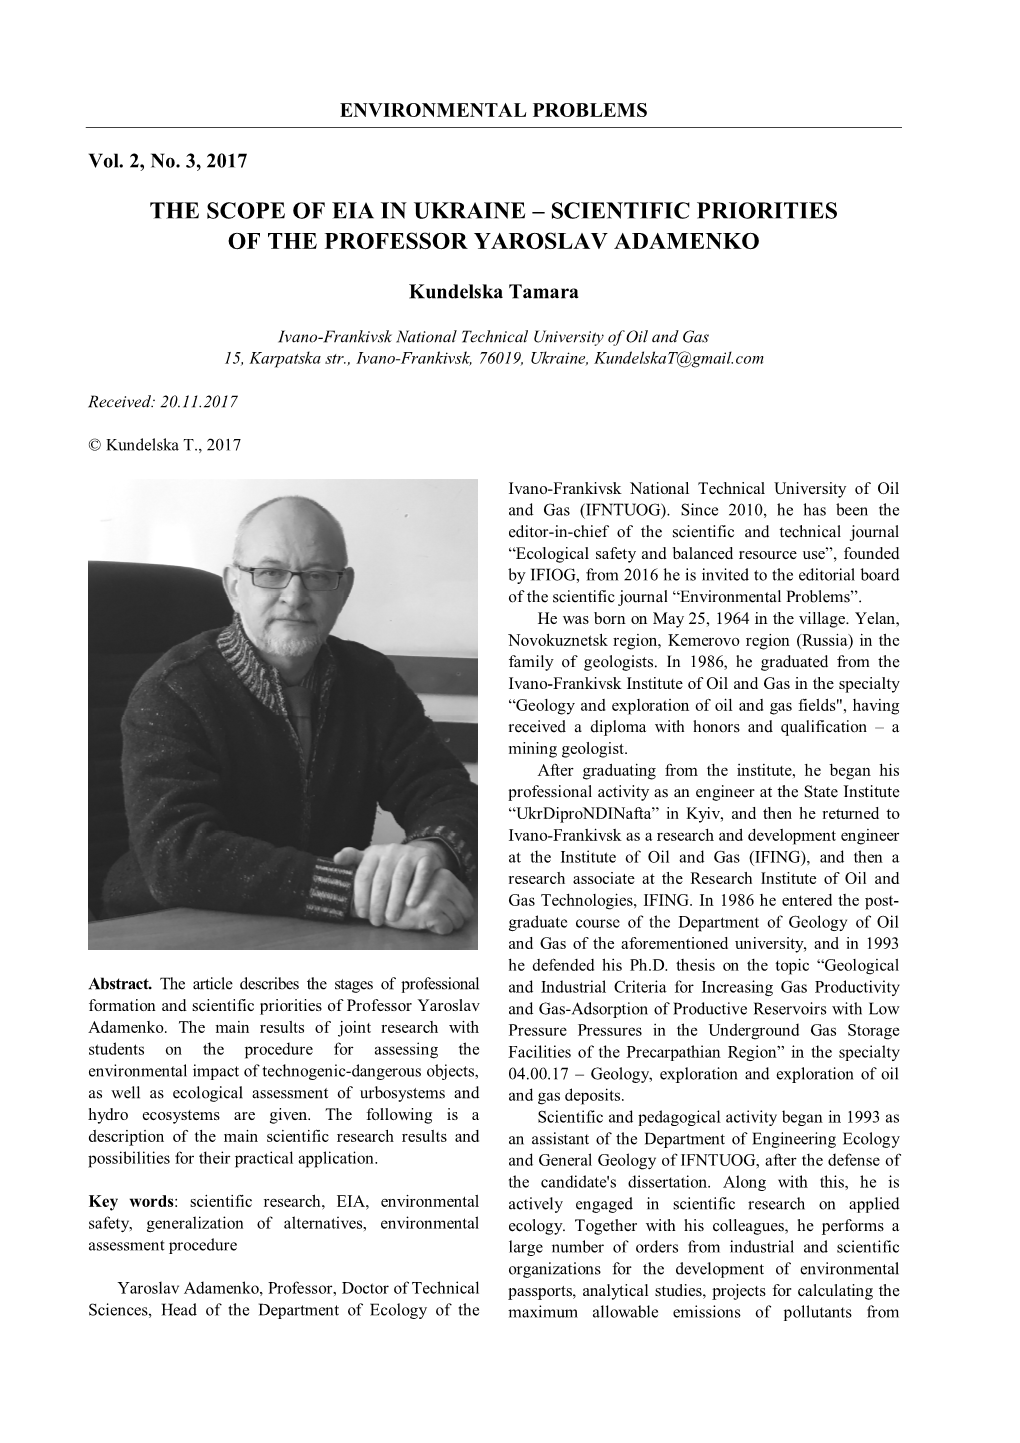 The Scope of Eia in Ukraine – Scientific Priorities of the Professor Yaroslav Adamenko